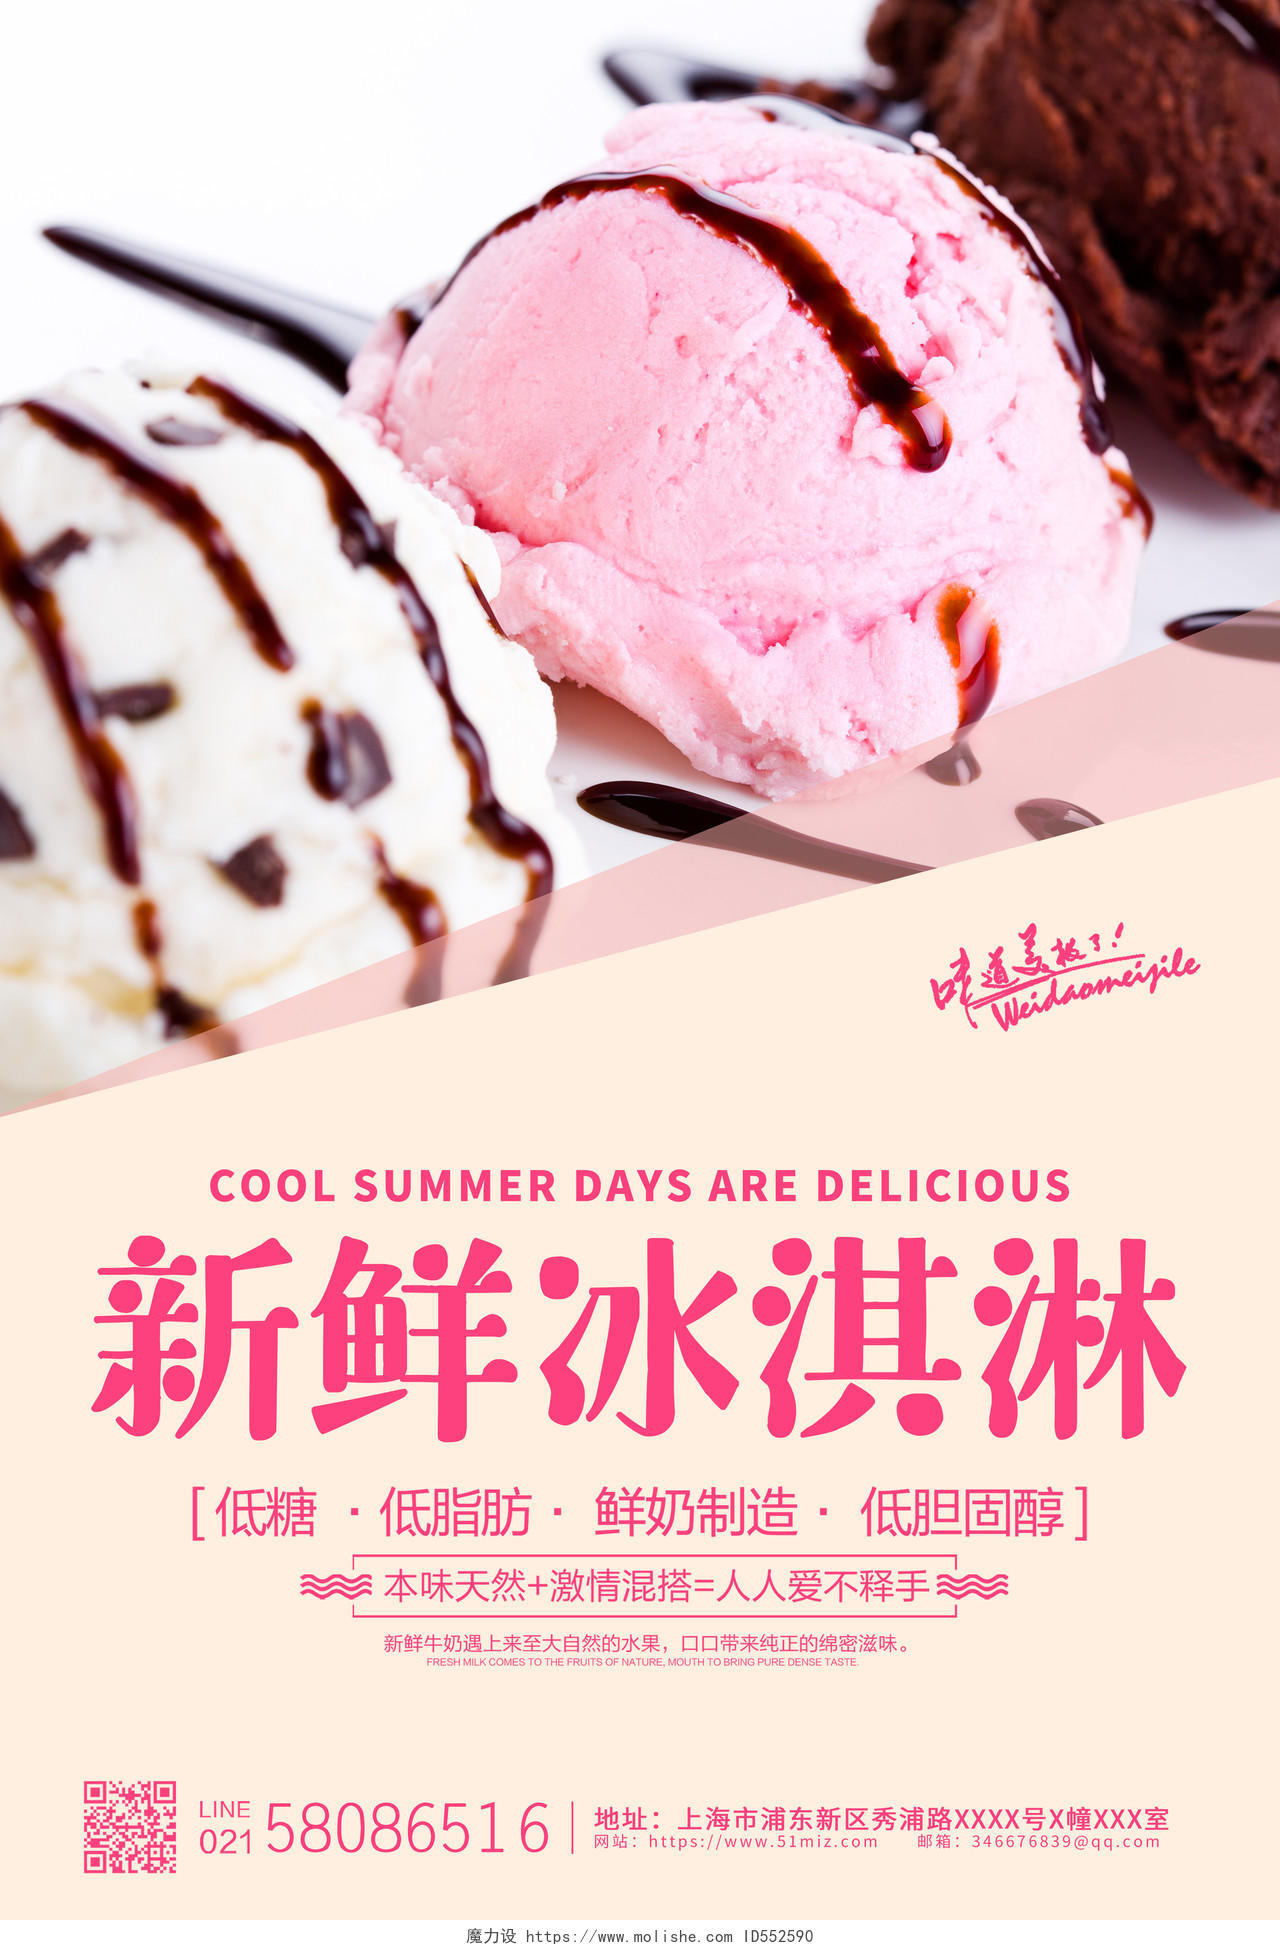 夏天甜品冰淇淋雪糕夏日冰激凌冷饮酷爽夏天12张套图夏天冰淇淋雪糕